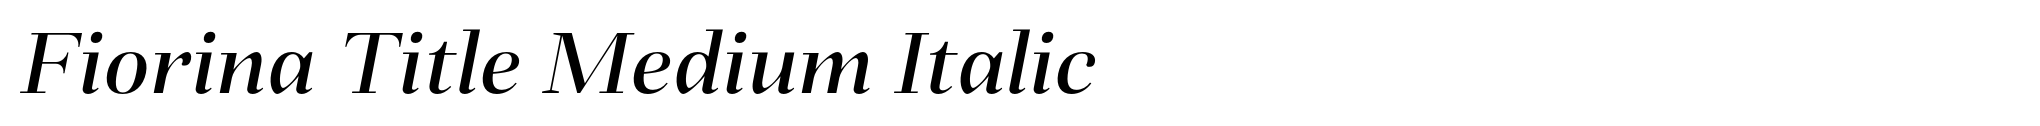 Fiorina Title Medium Italic image